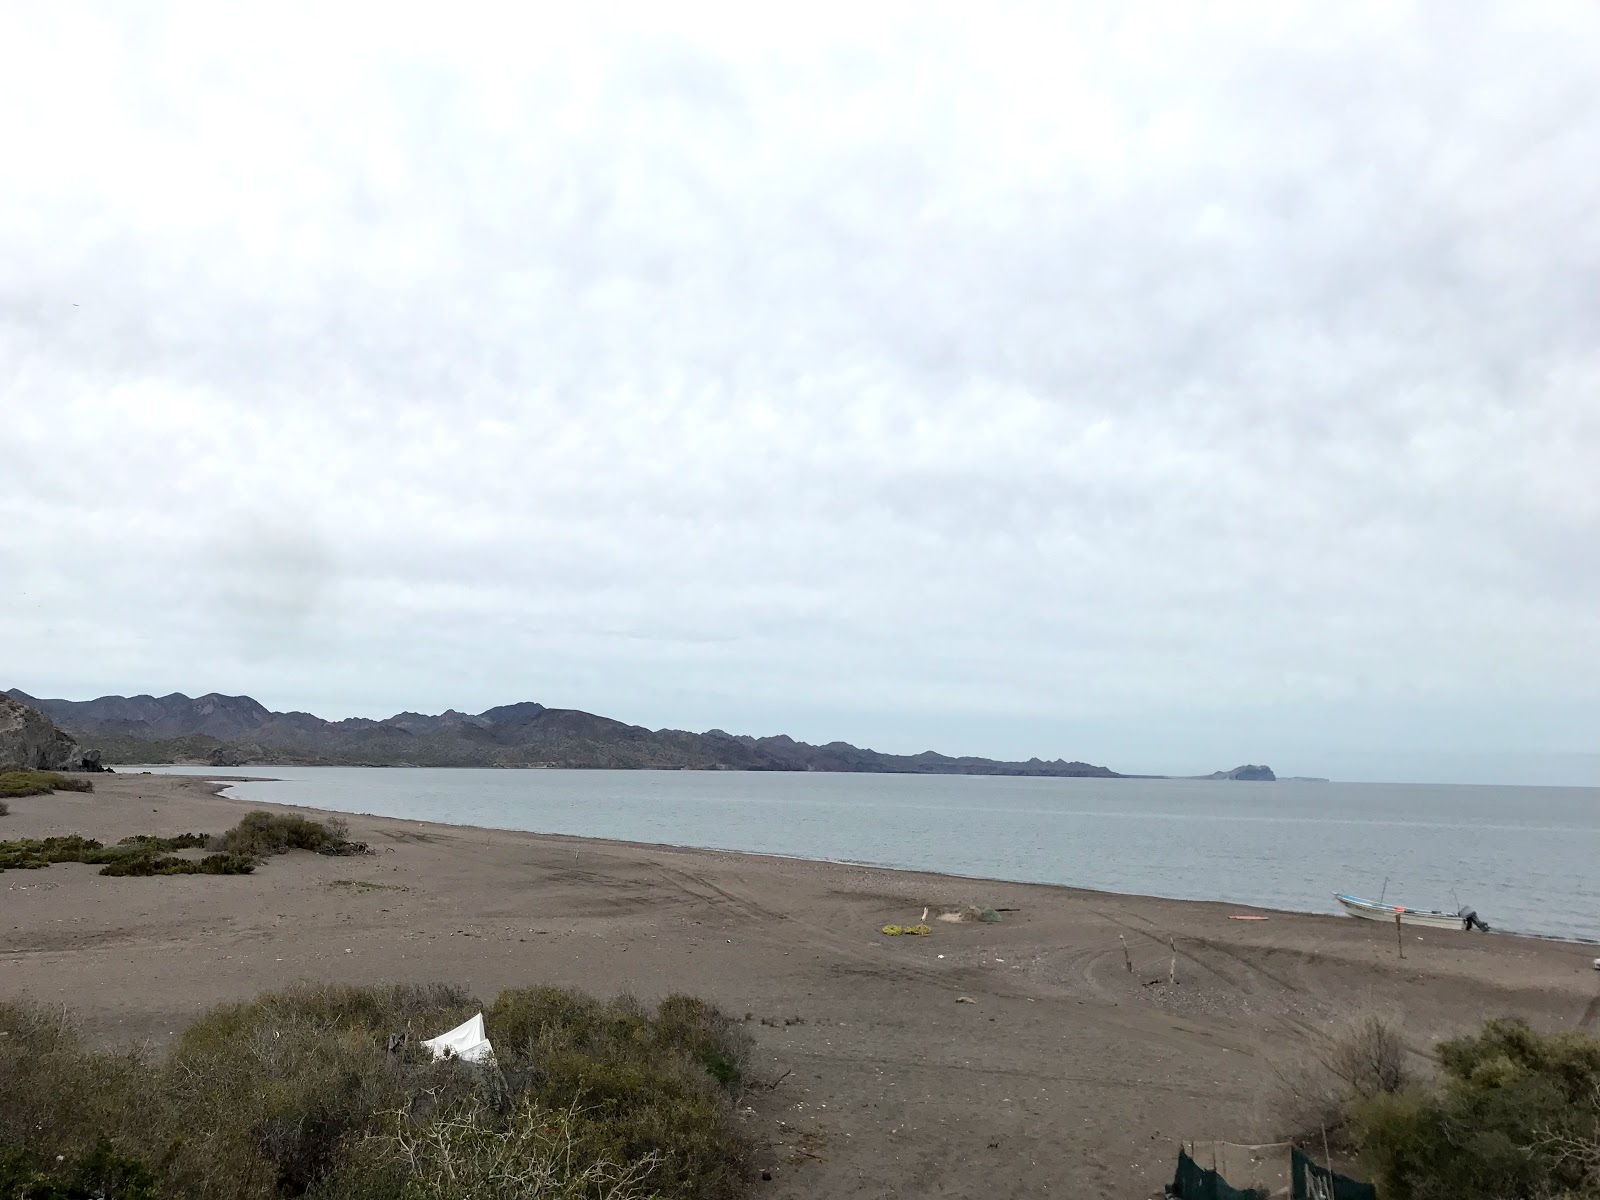 Playa San Juaniquito'in fotoğrafı geniş plaj ile birlikte